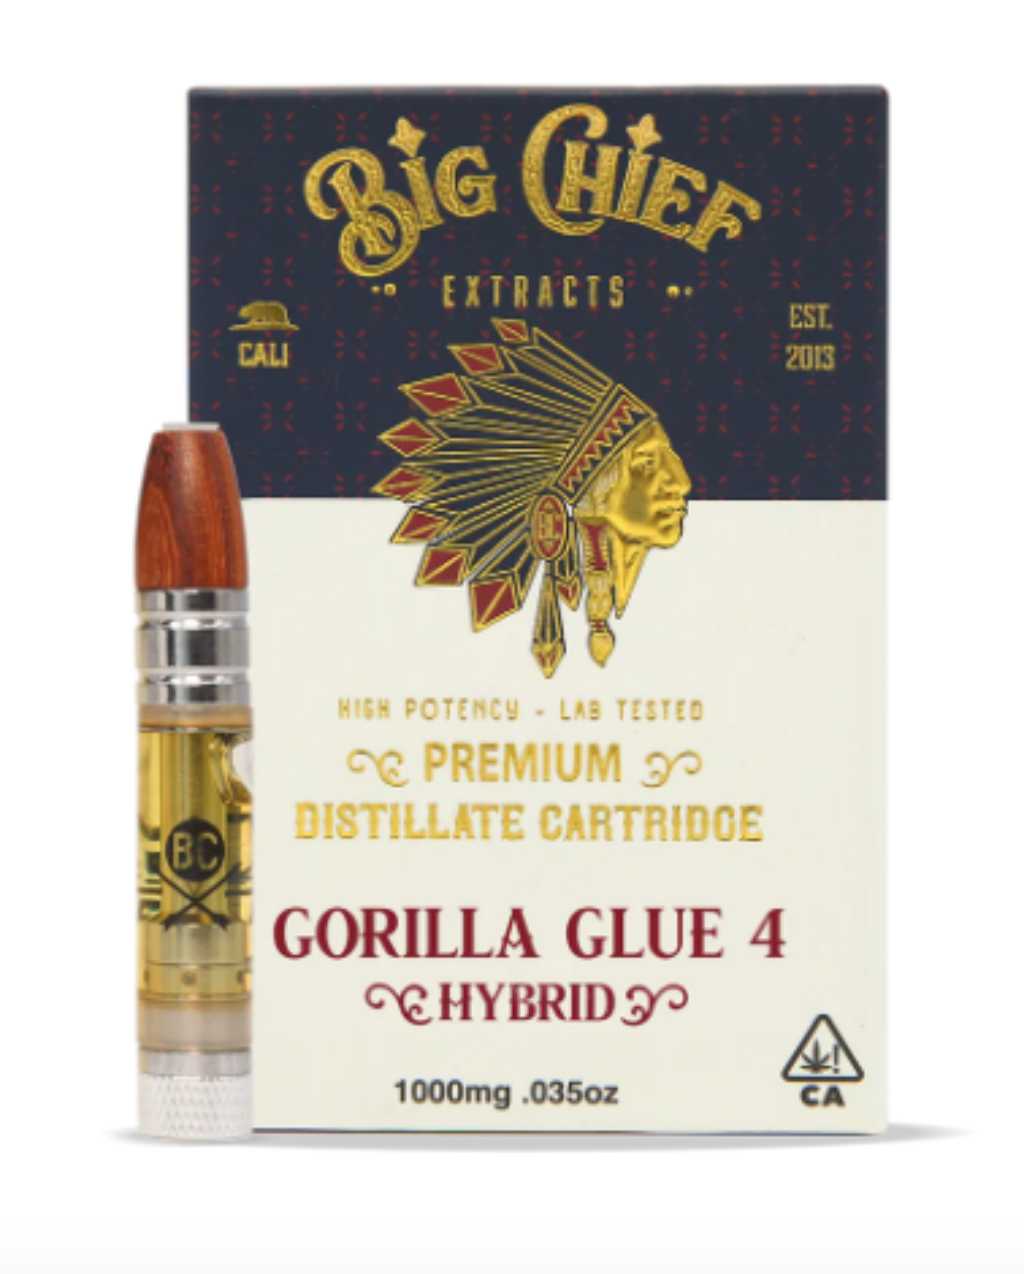 Gorilla Glue 4 (1g Hybrid)